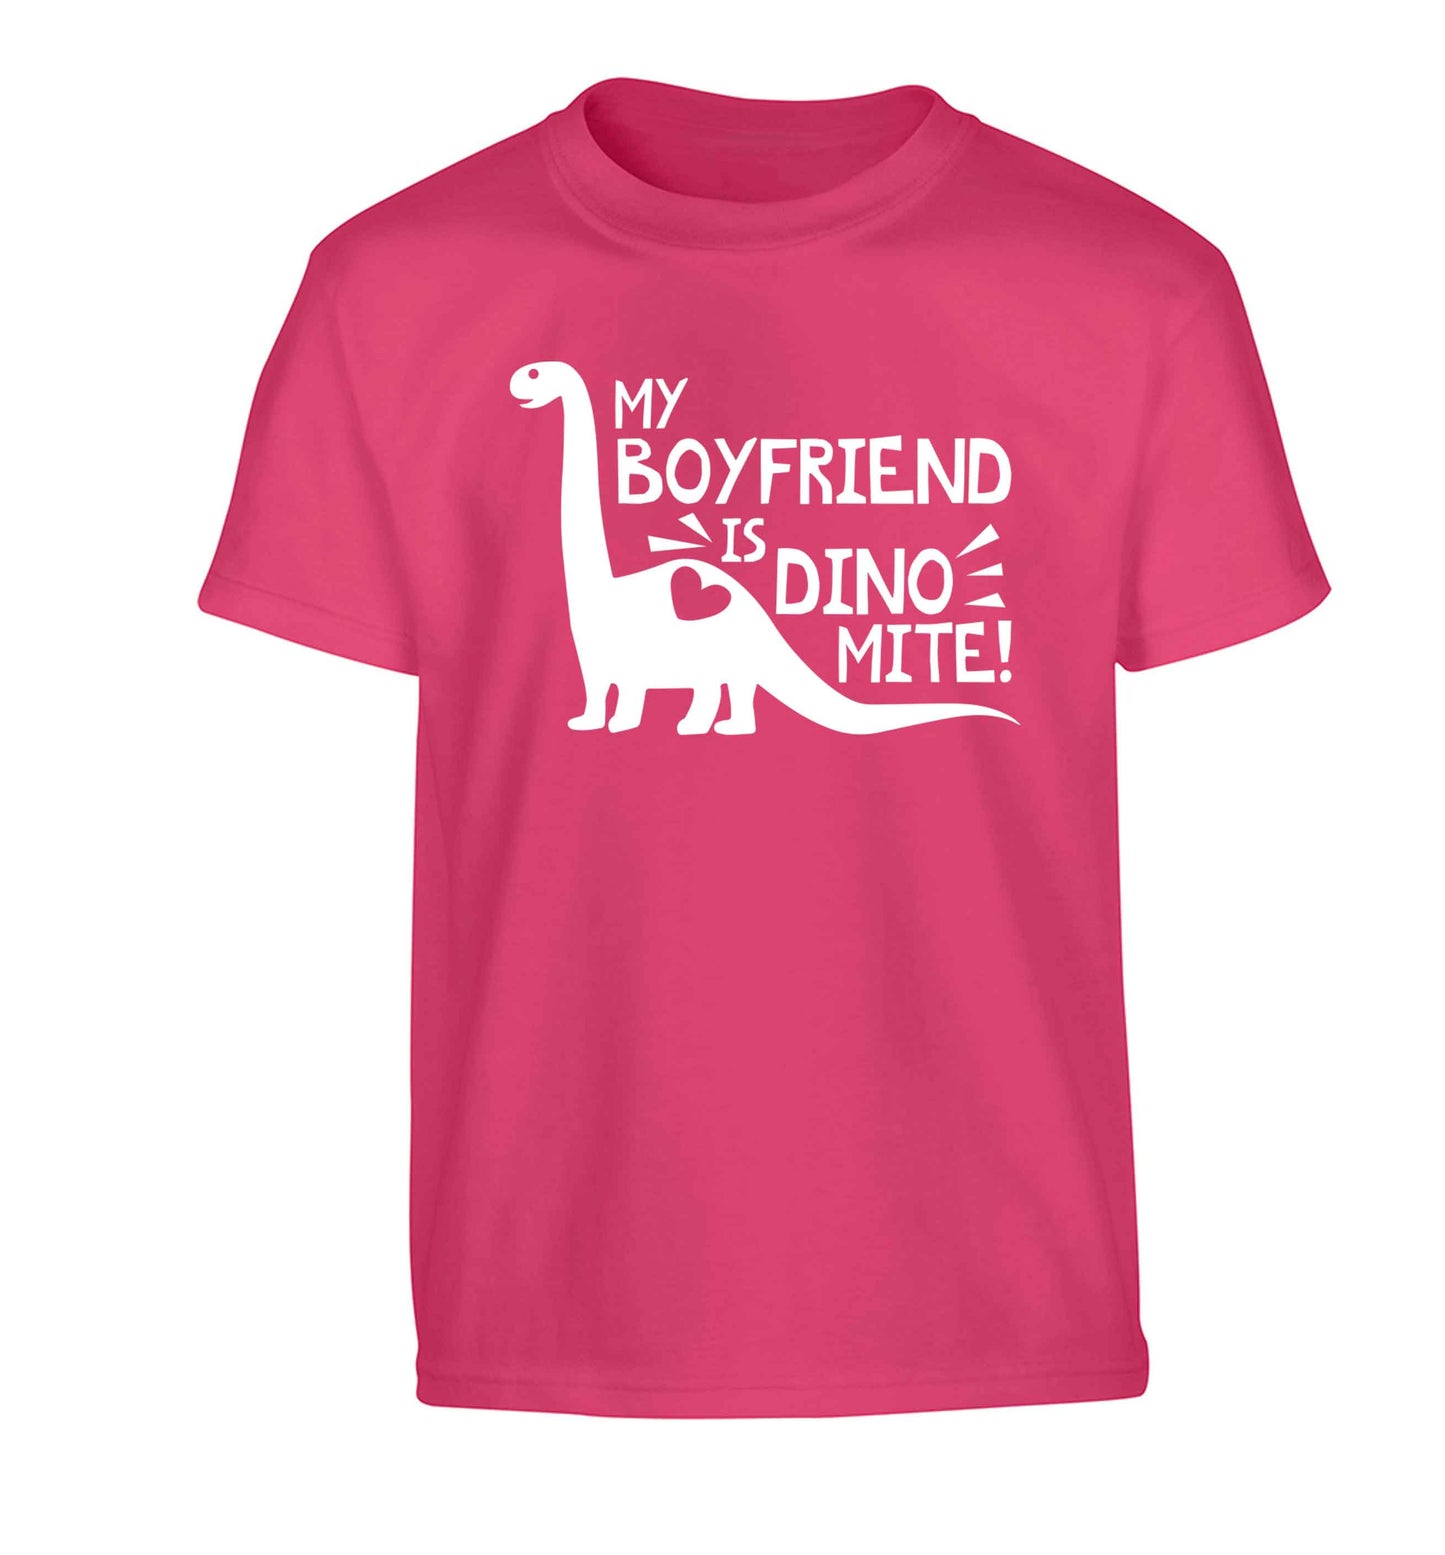 My boyfriend is dinomite! Children's pink Tshirt 12-13 Years